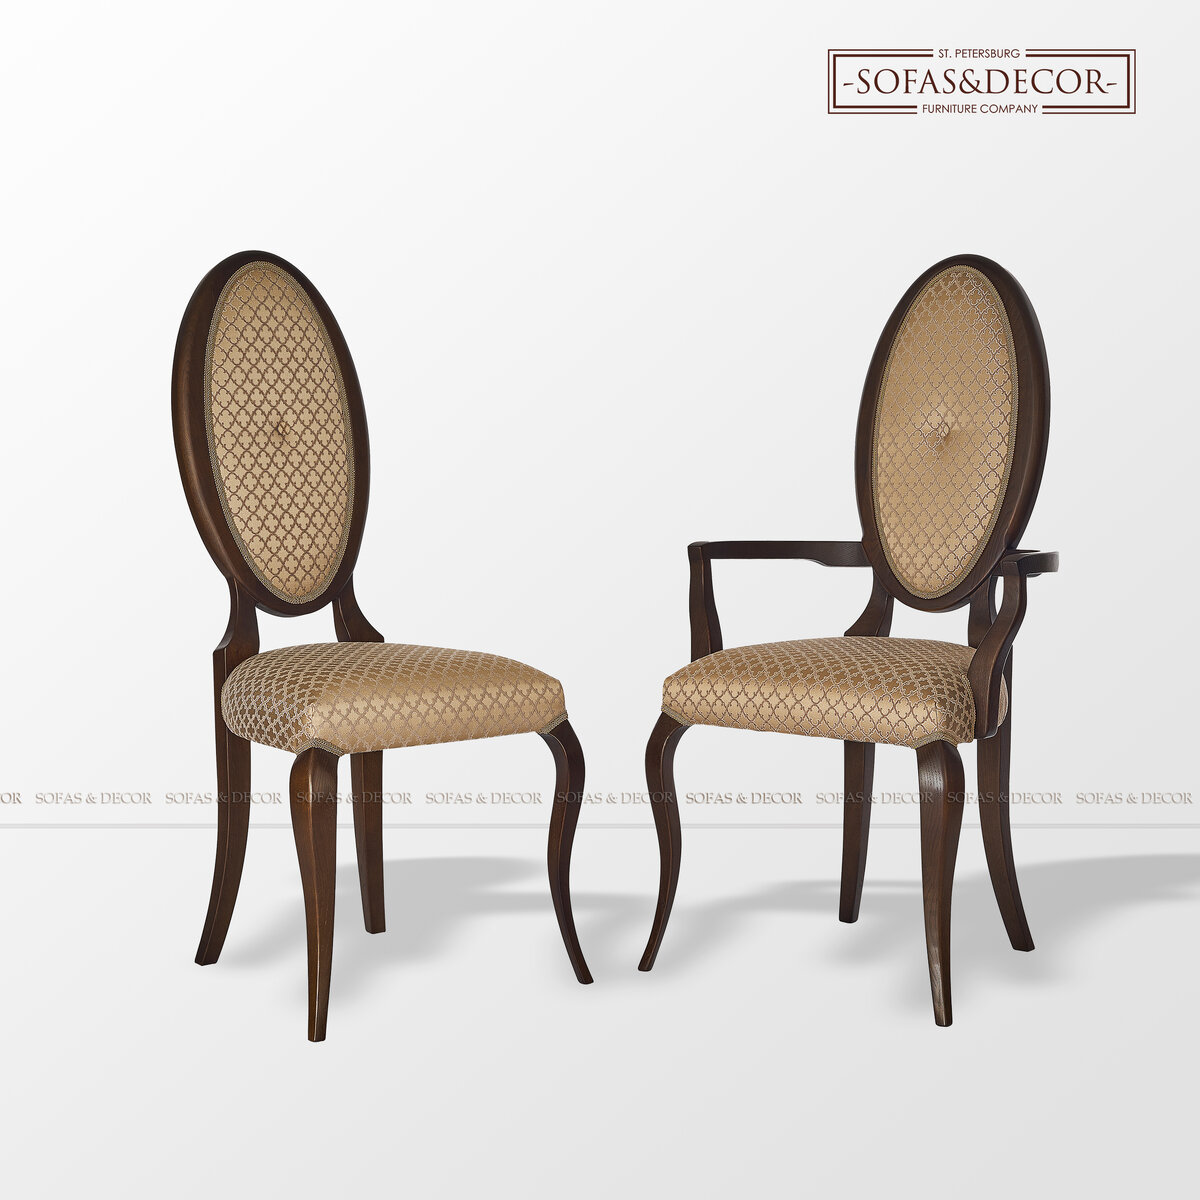 Классические формы, изящные линии и фактурная обивка этих стульев отлично смотриться в роскошном интерьере неоклассики.